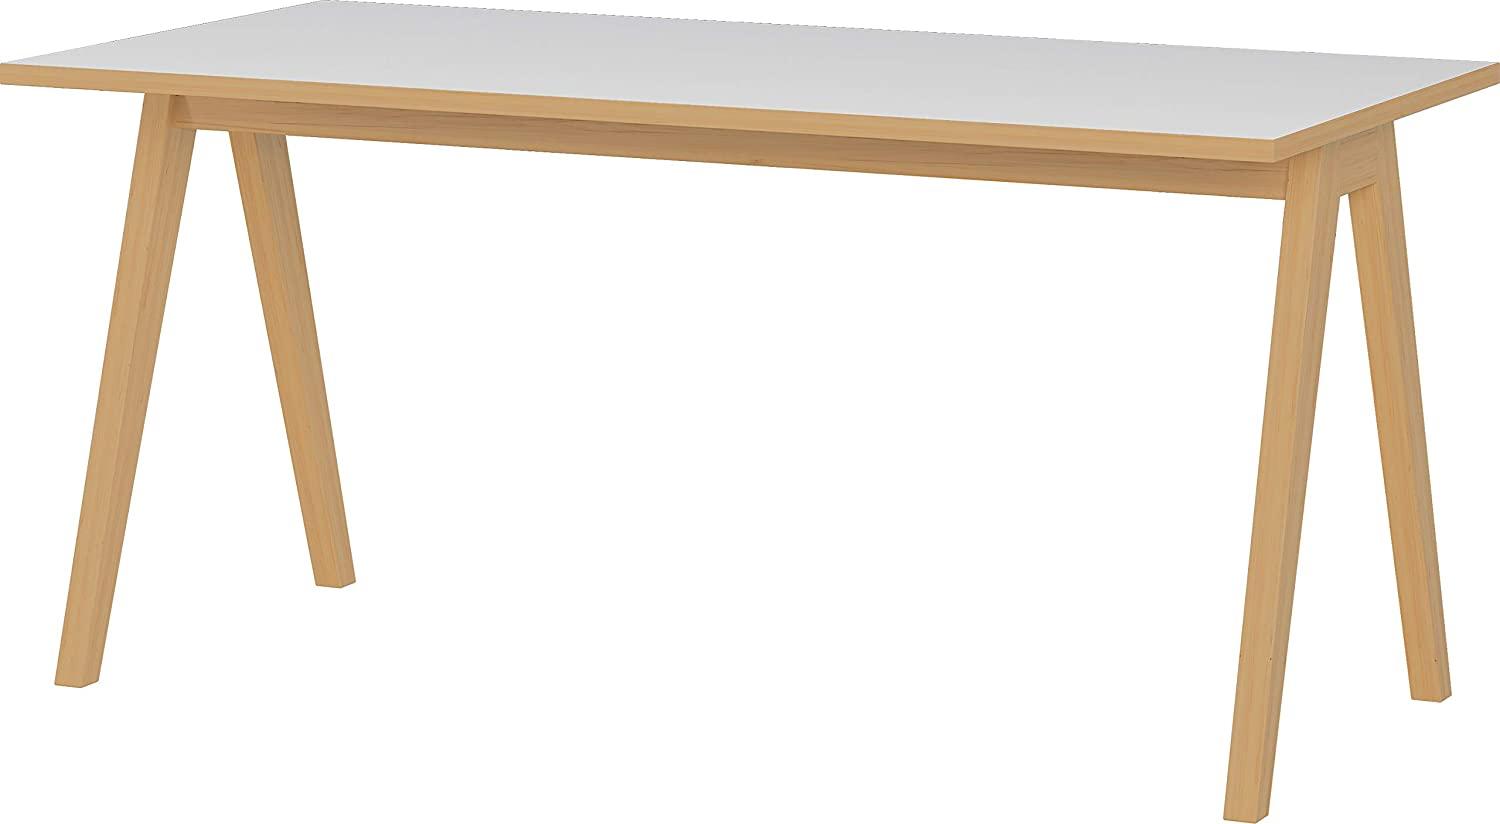 Amazon Marke - Alkove Schreibtisch Swanton, ideal für Home Office, in Weiß/Navarra-Eiche-Nachbildung, in skandinavischem Design, 160 x 75 x 80 cm (BxHxT) Bild 1